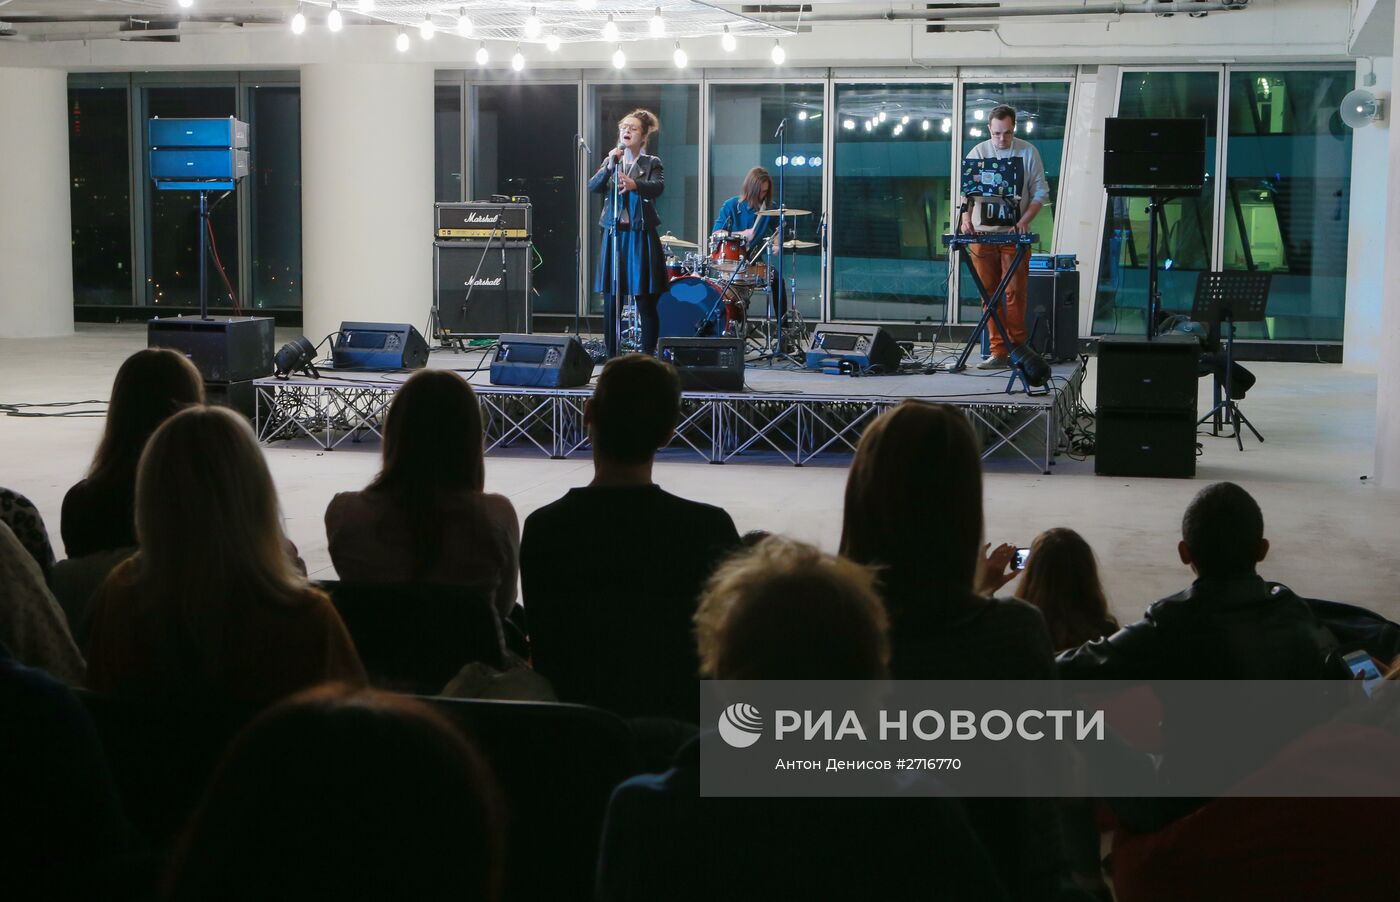 "Ночь музыки" в Москве